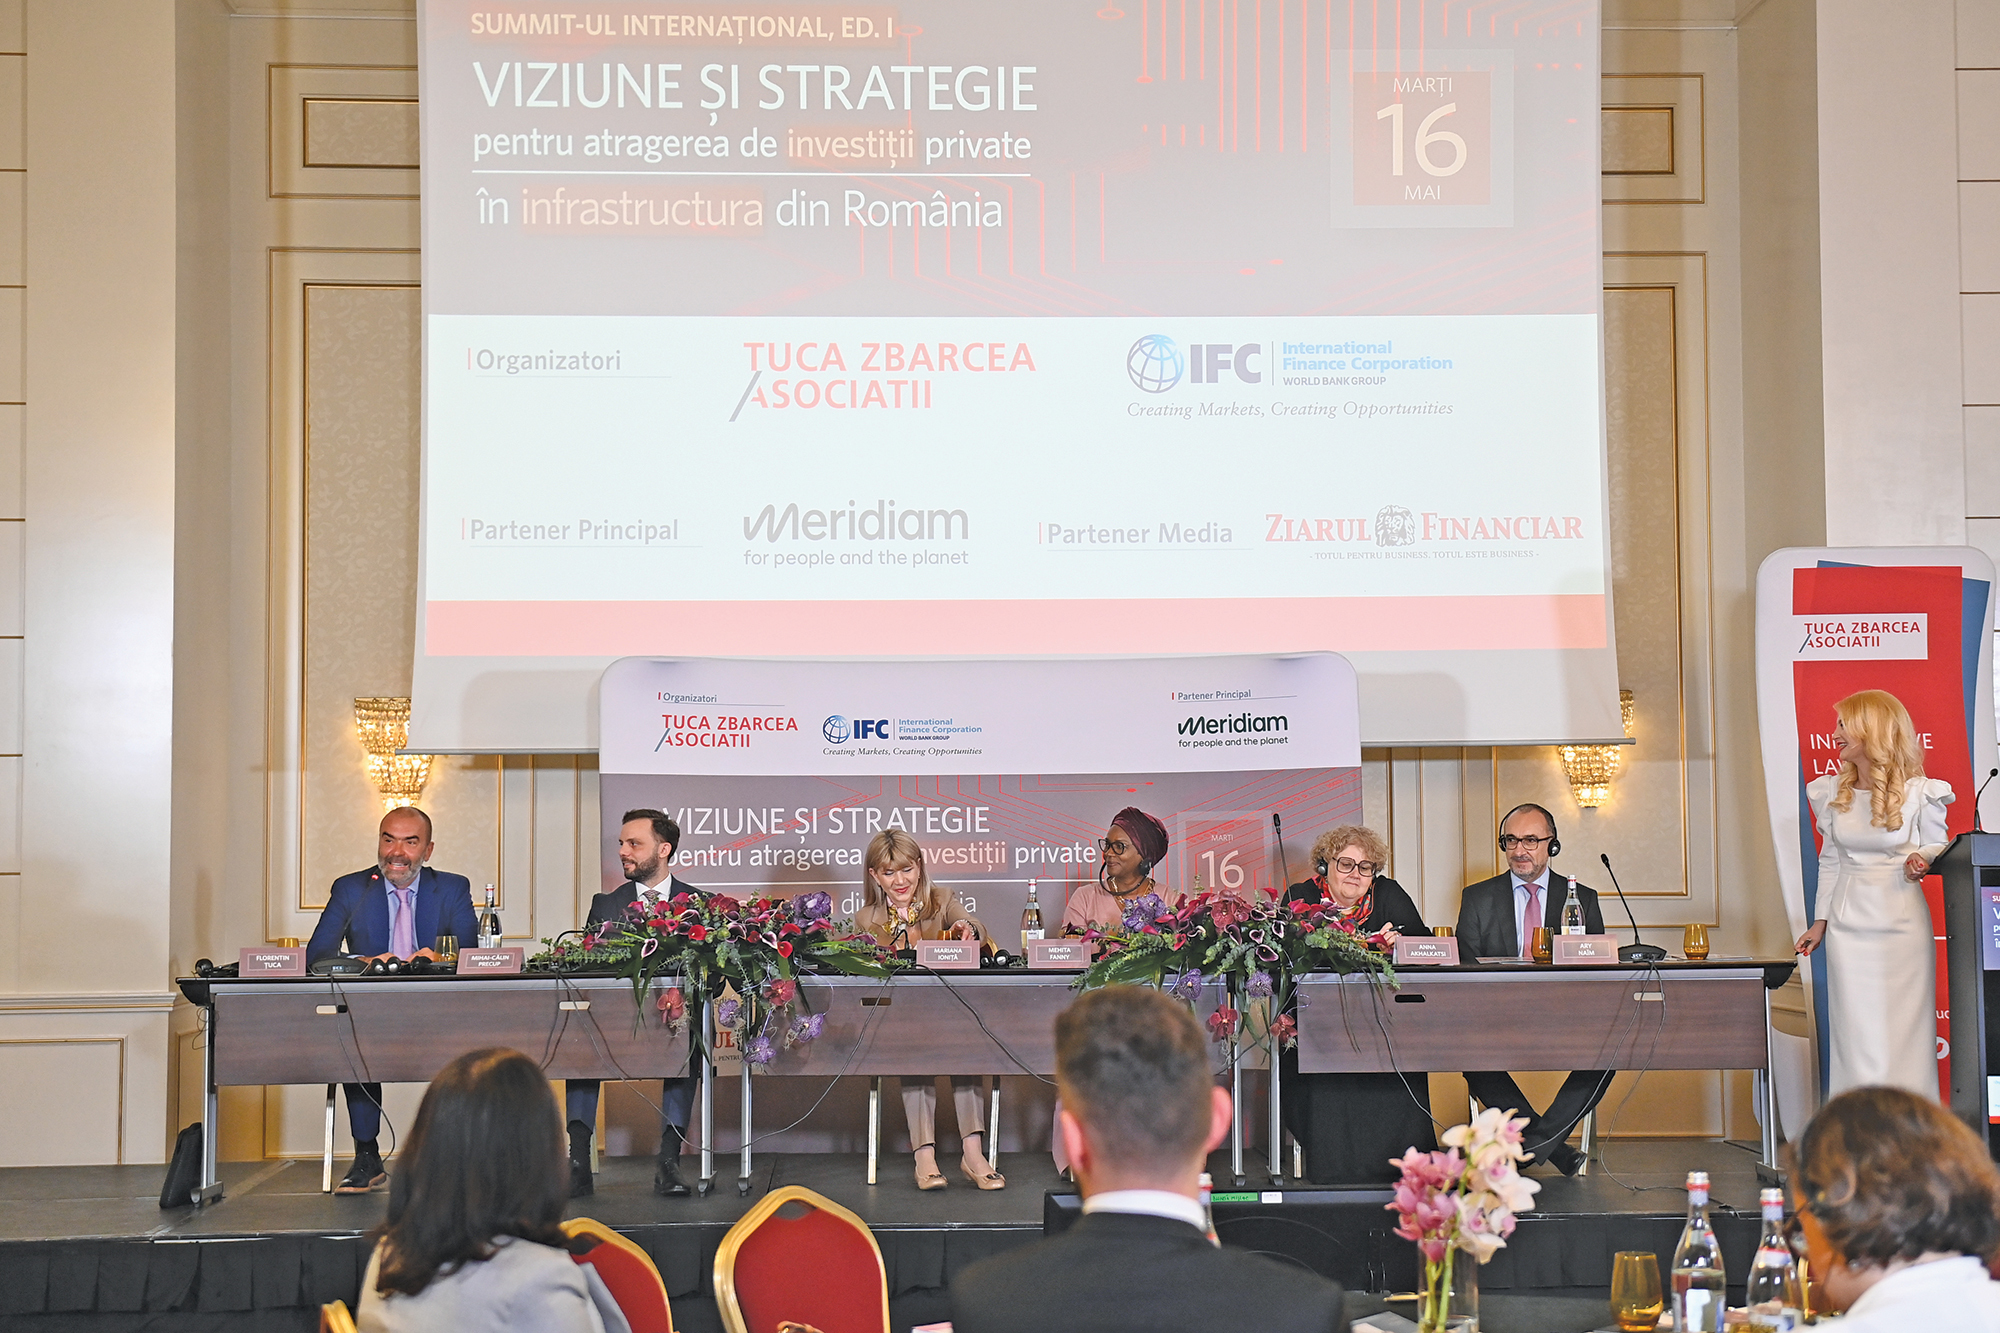 Summitul Ţuca Zbârcea & Asociaţii/IFC „Viziune şi strategie pentru atragerea de investiţii private în infrastructura din România“. Este momentul ca România să clarifice mecanismele parteneriatului public-privat şi să folosească acest instrument pentru dezvoltarea infrastructurii